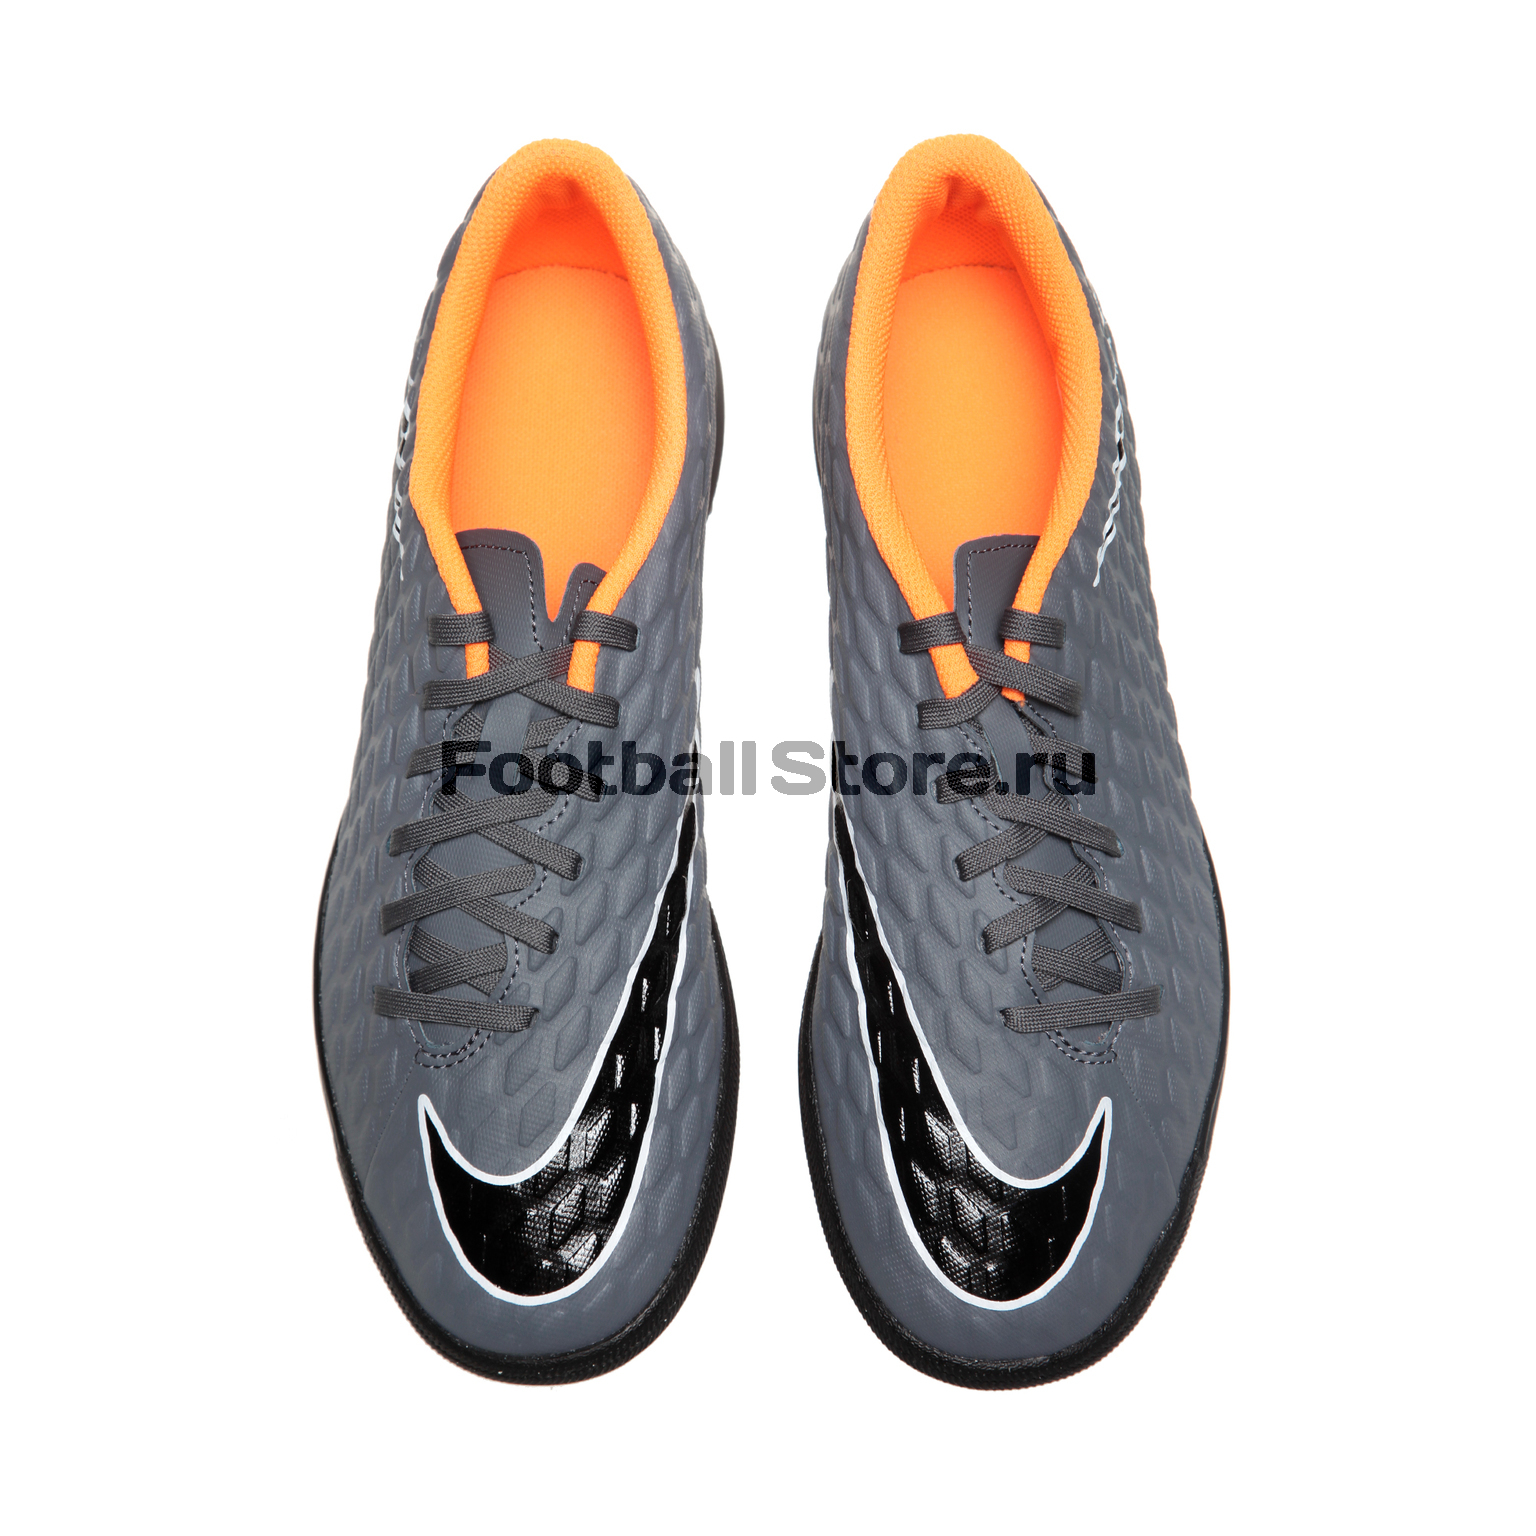 Шиповки Nike PhantomX 3 Club TF AH7281-081 – купить в футбольном магазине  footballstore, цена, фото